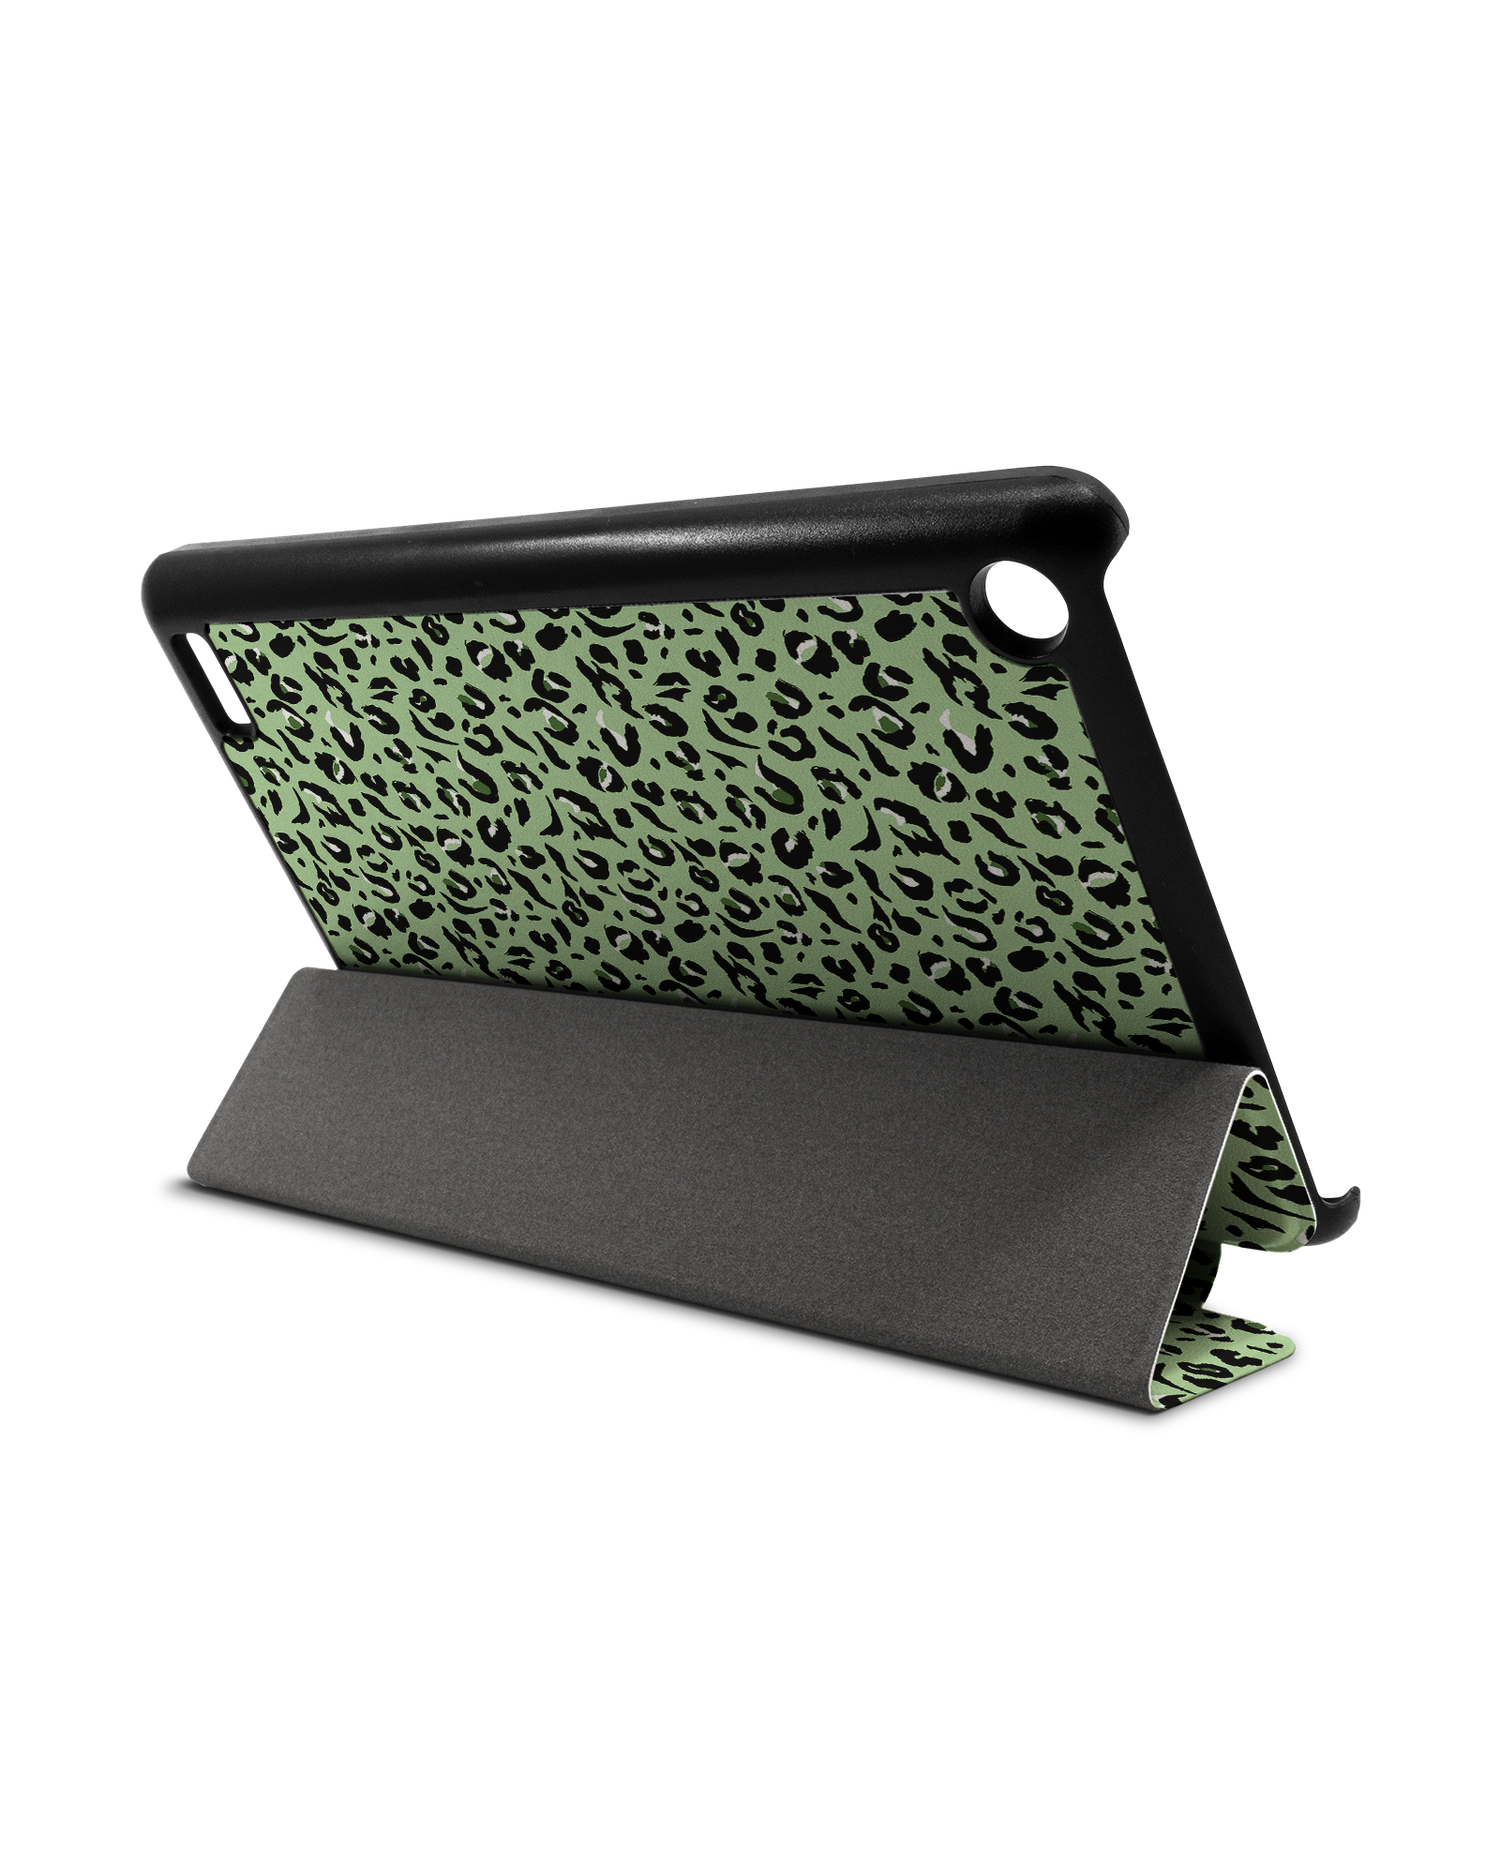 Mint Leopard Tablet Smart Case für Amazon Fire 7: Aufgestellt im Querformat